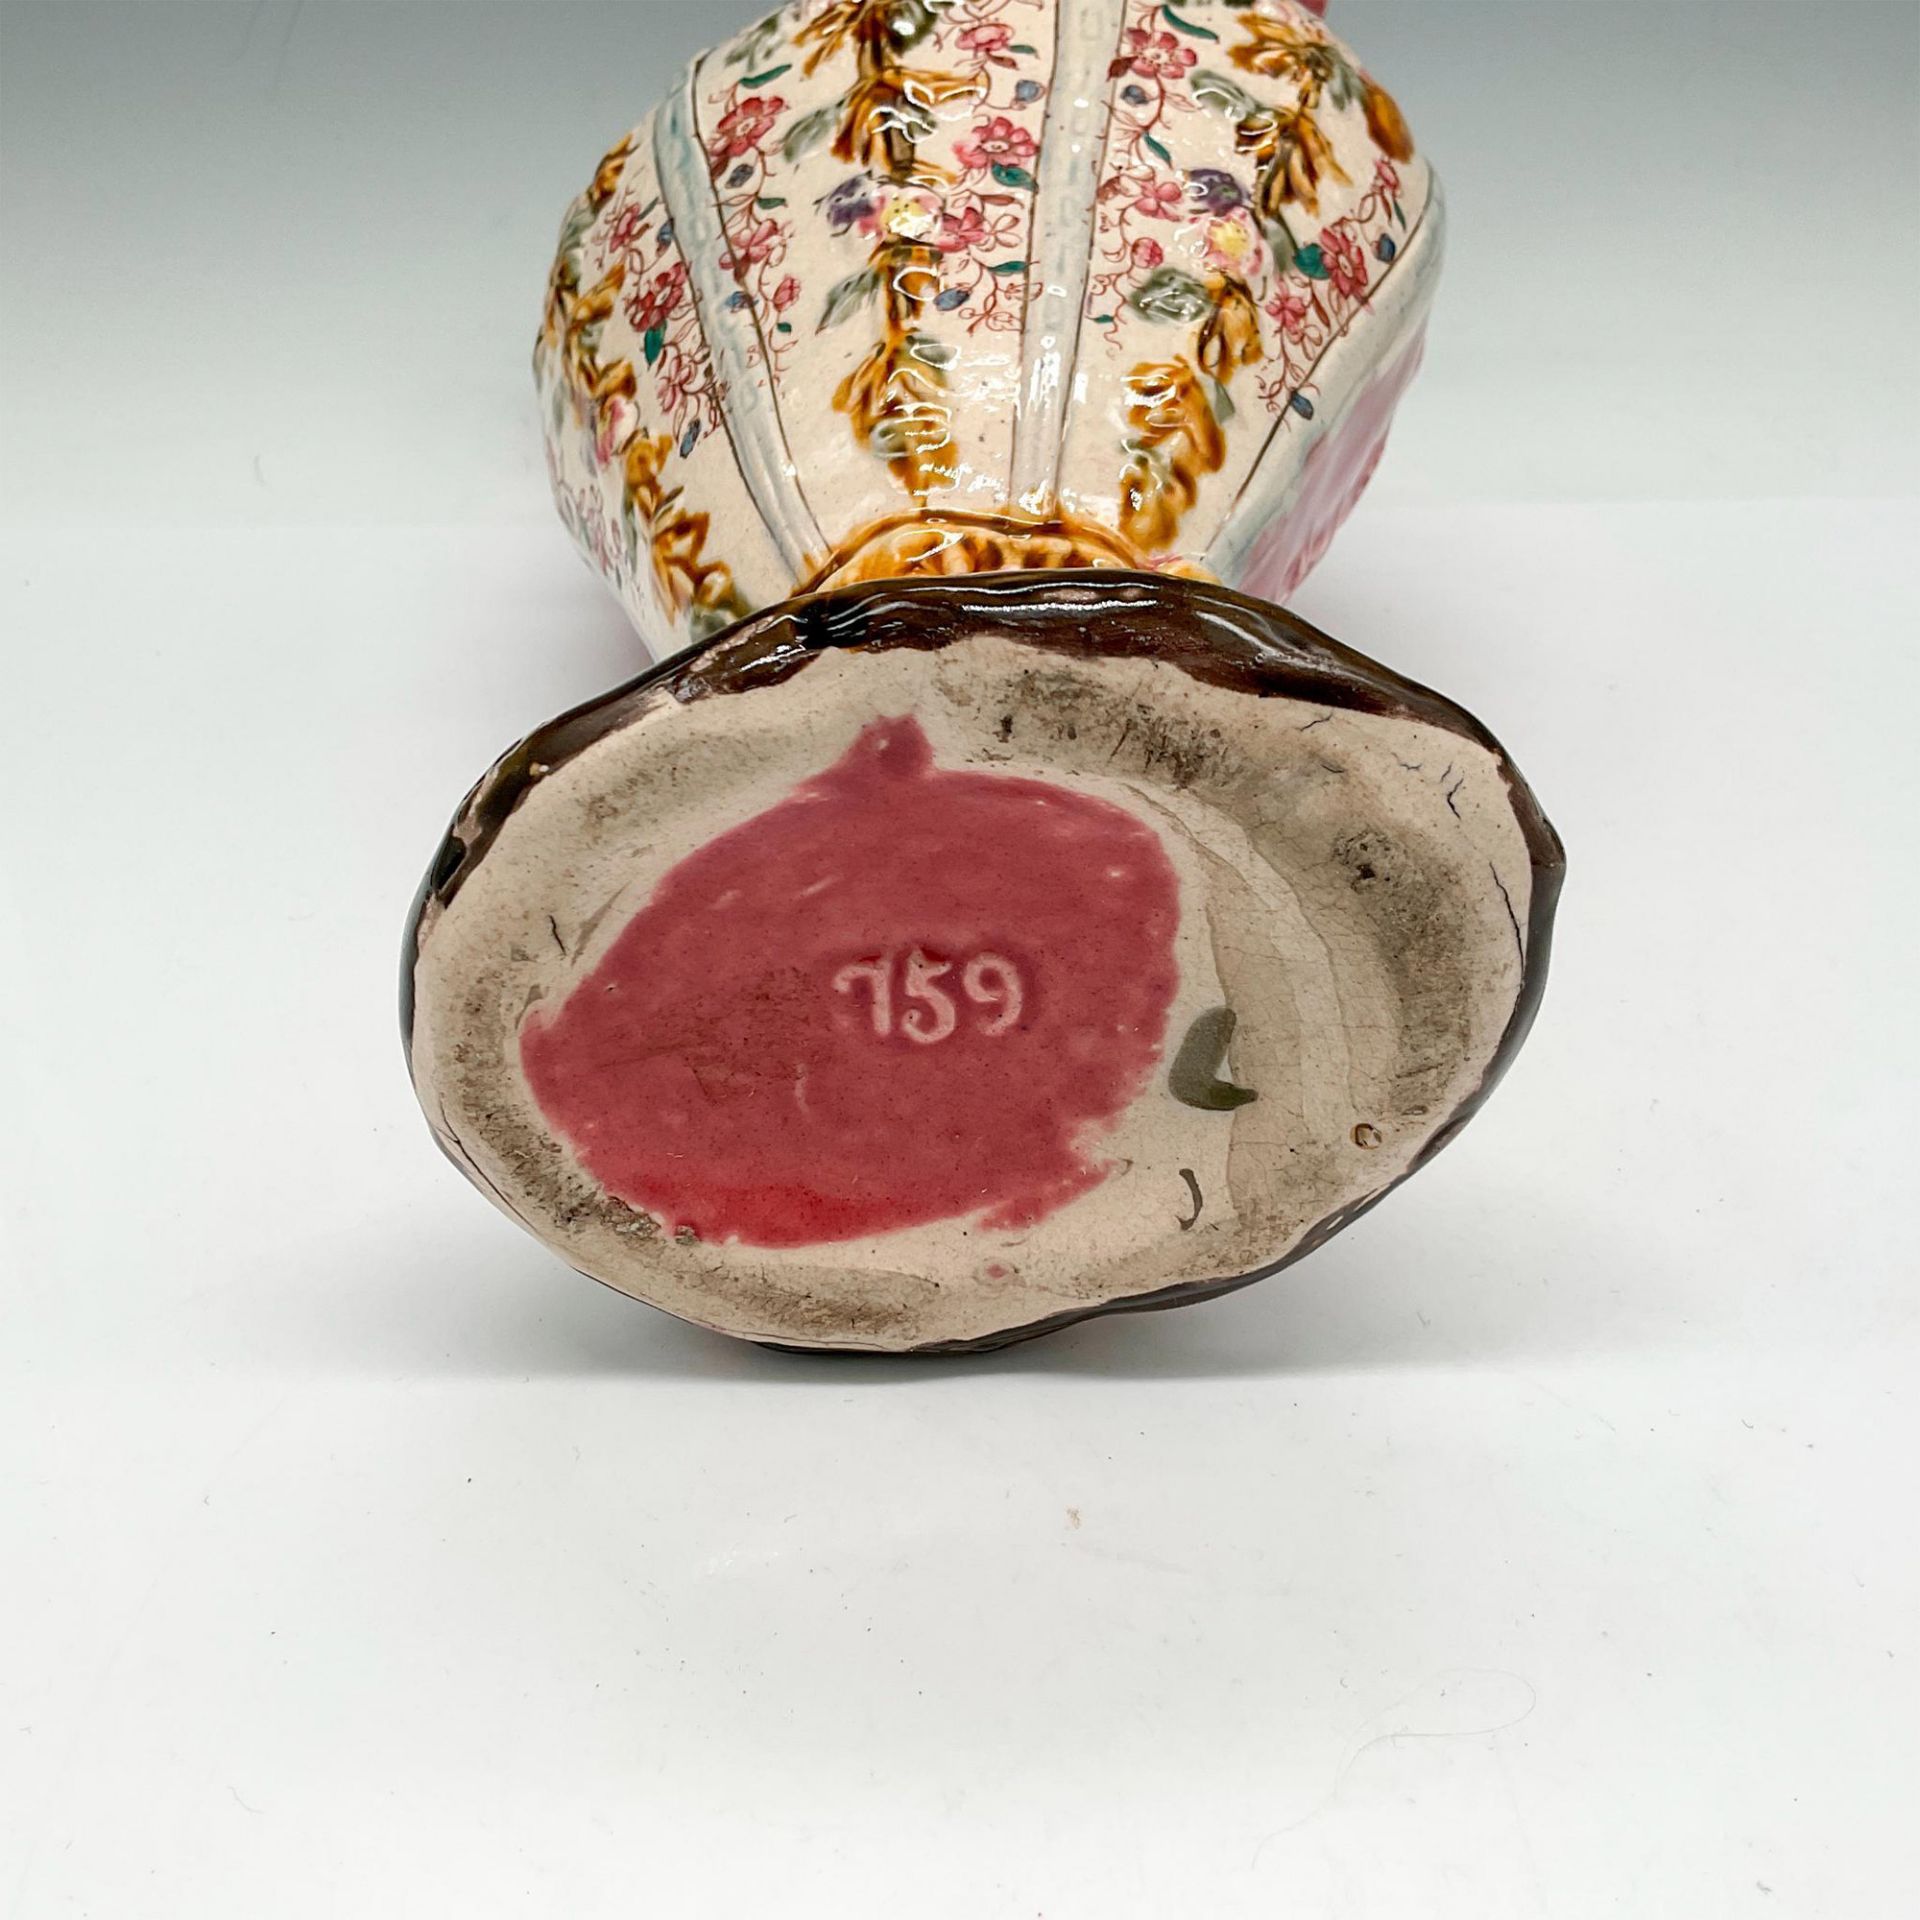 Italian Majolica Paneled Pitcher Vase - Image 3 of 3